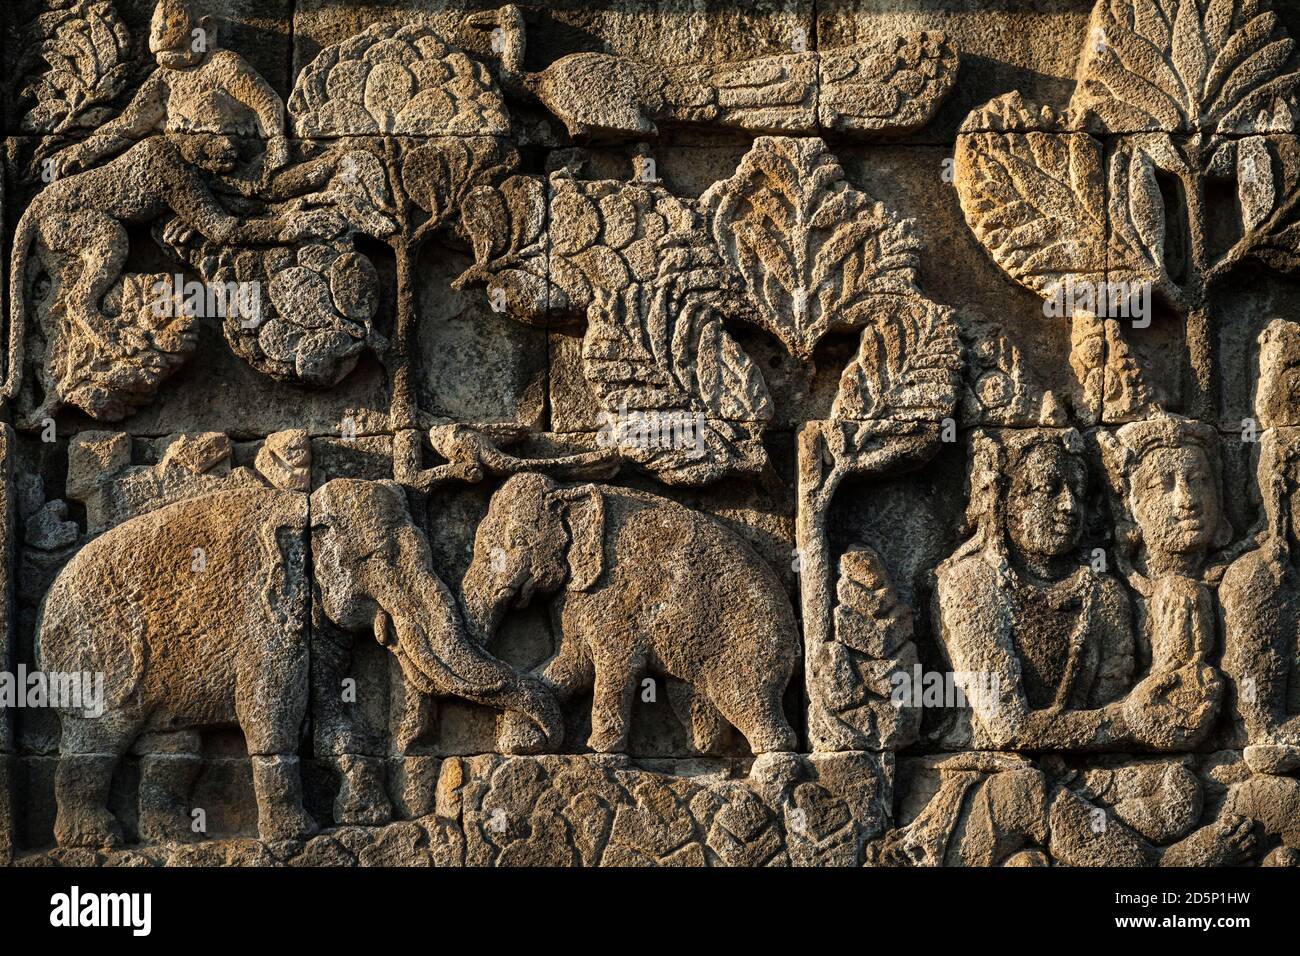 Vue de près horizontale de l'un des bas-reliefs magnifiquement ornementés du temple bouddhiste Borobudur, Borobudur, Java, Indonésie Banque D'Images